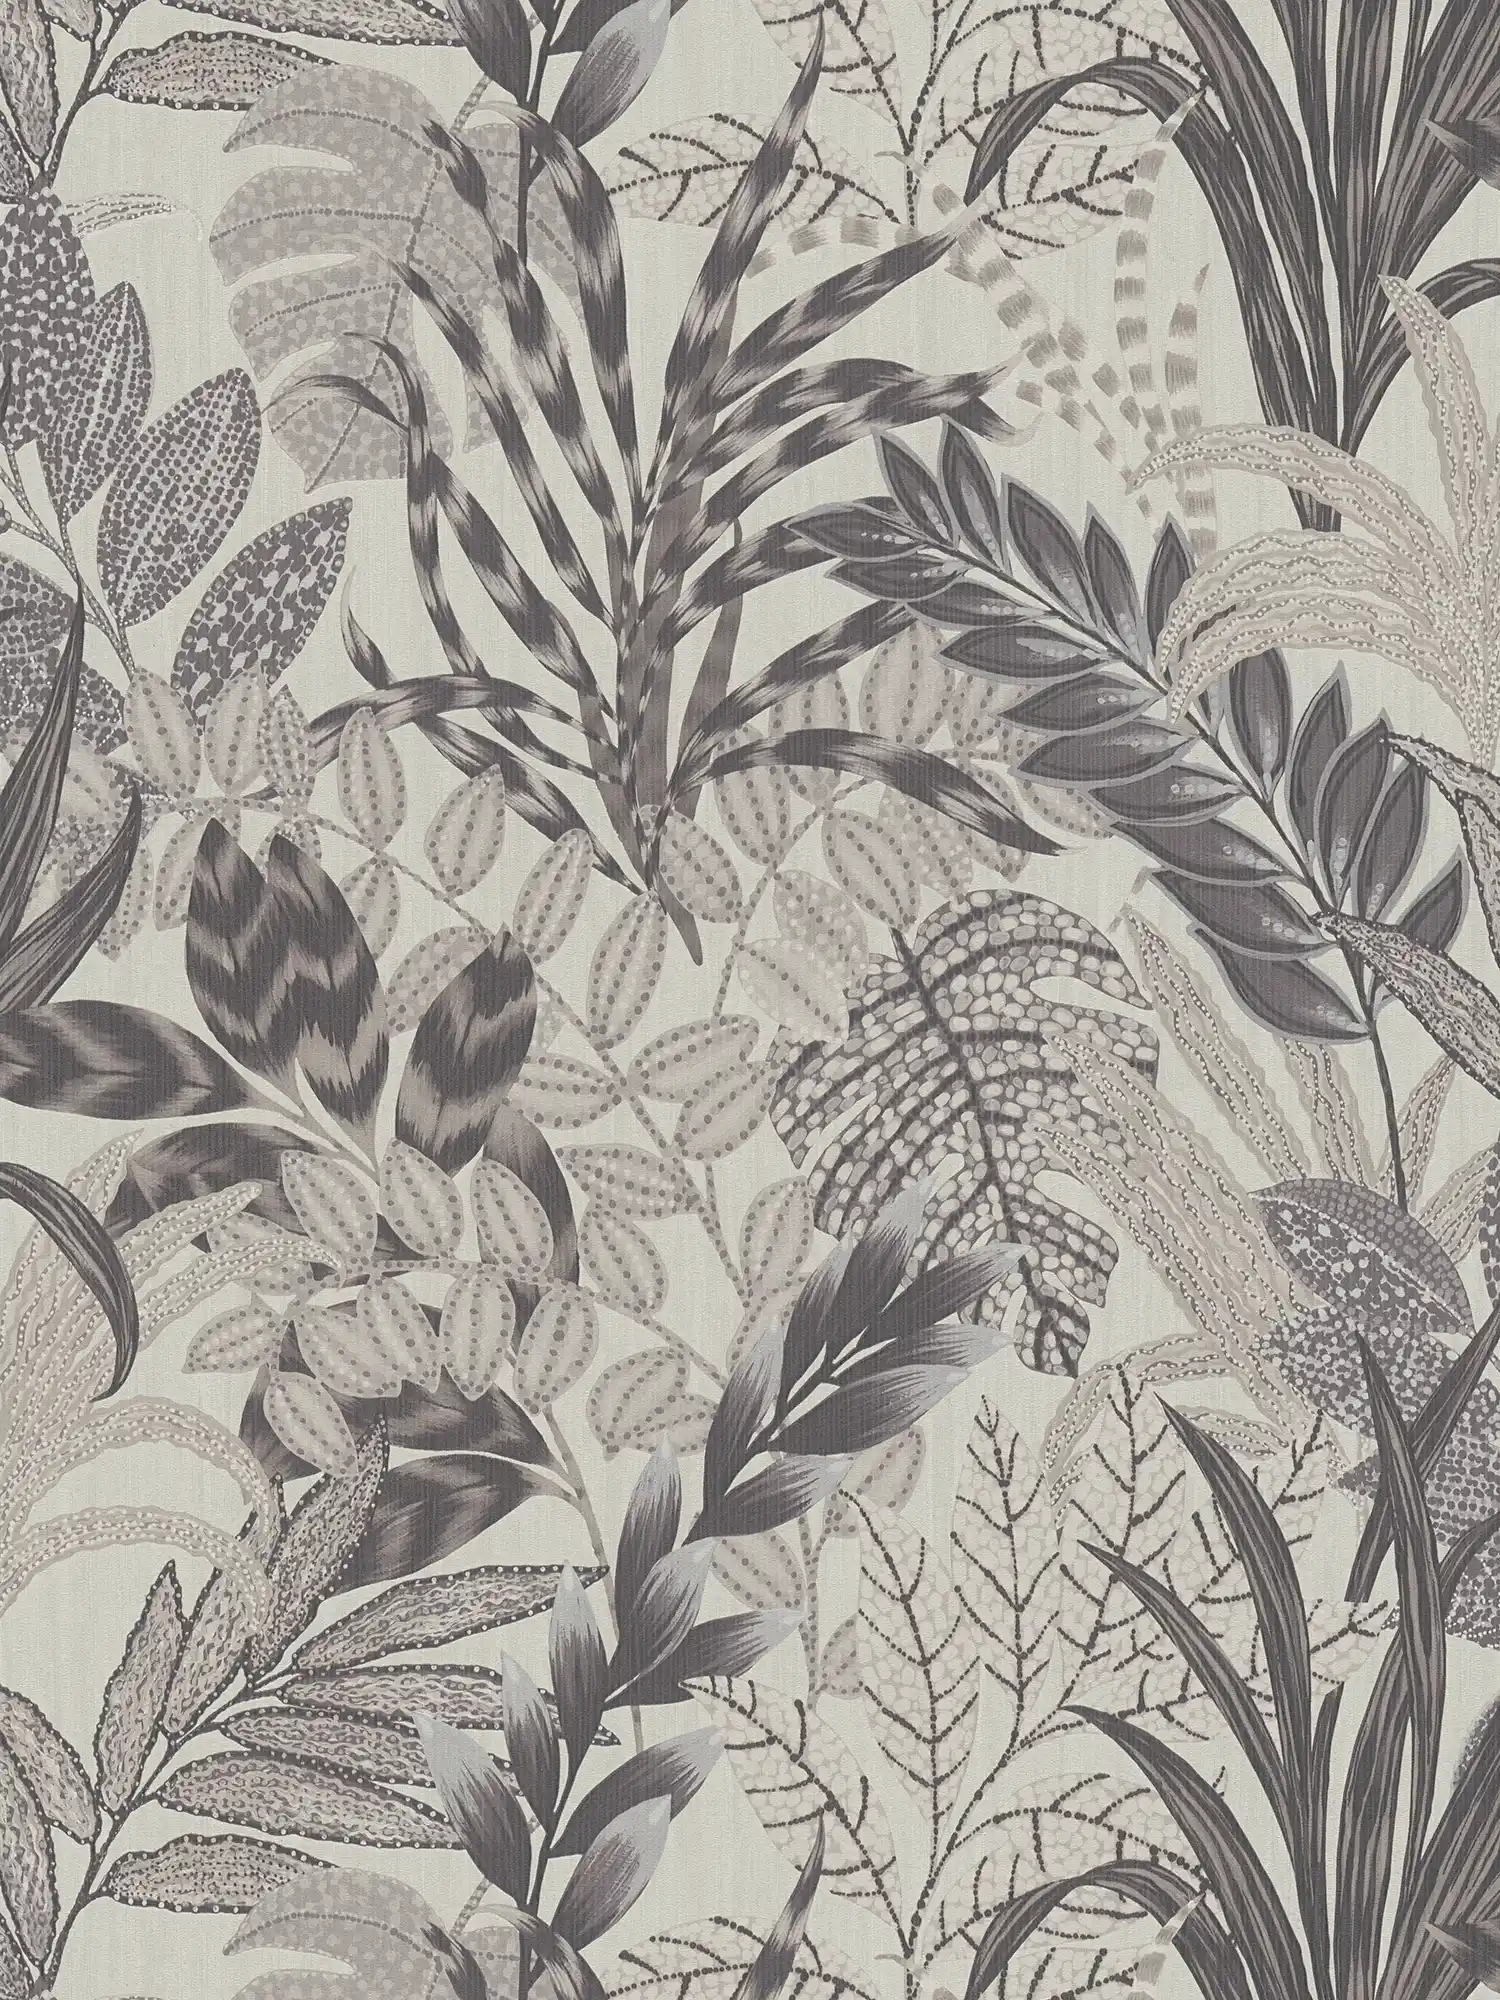         Monochrome Dschungel Tapete mit Prägestruktur – Grau, Weiß
    